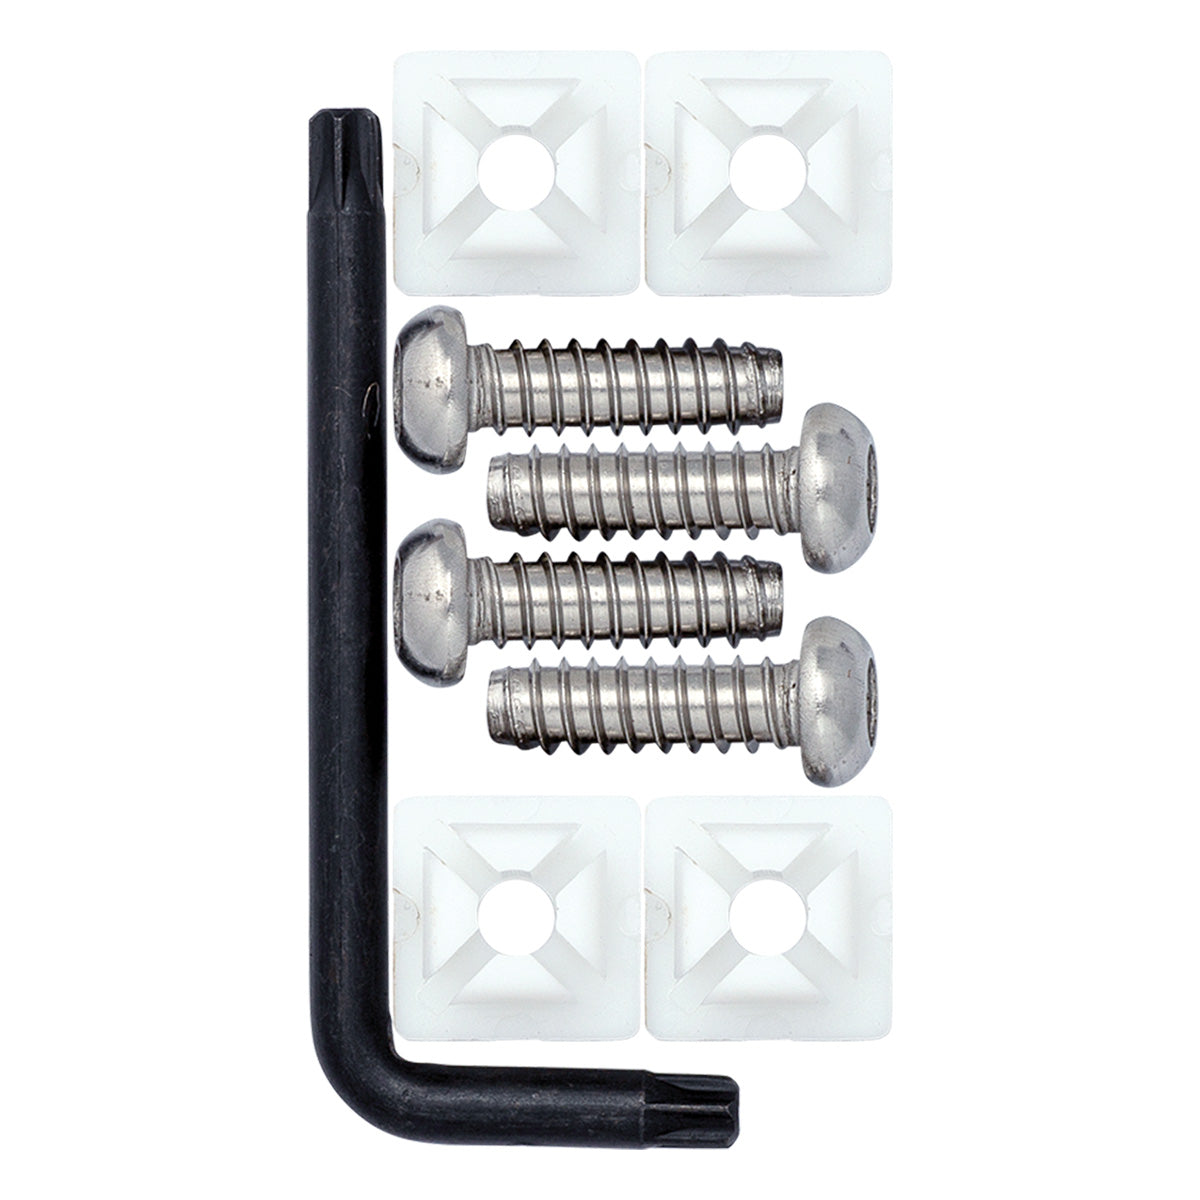 Domestic Standard Locking Screw Kit Components